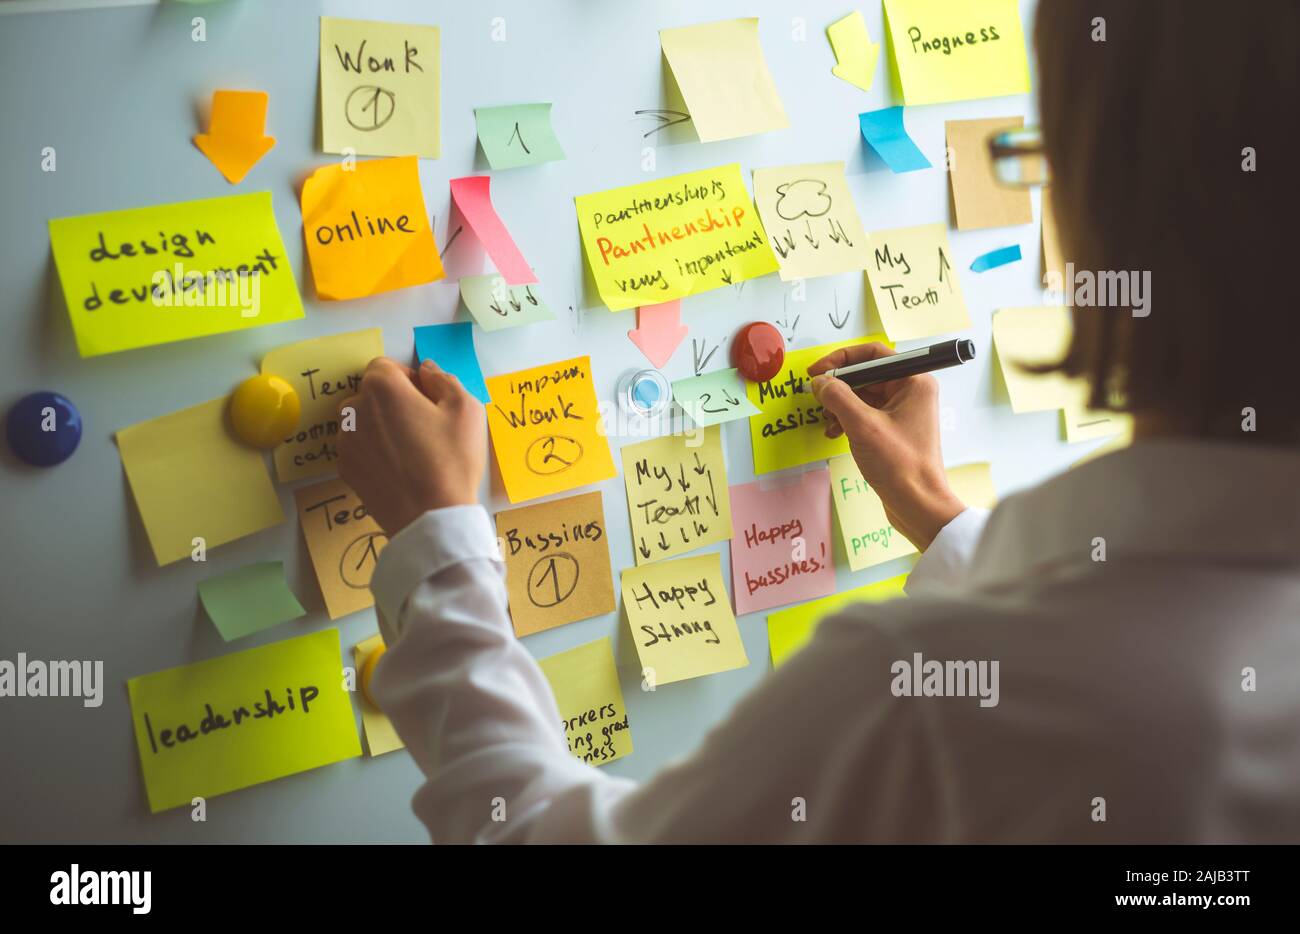 Geschäftsleute schreiben einen wichtigen Hinweis auf, indem sie auf dem Papieraufklebepfosten verwenden. Brainstorming, Teamarbeit. Stockfoto